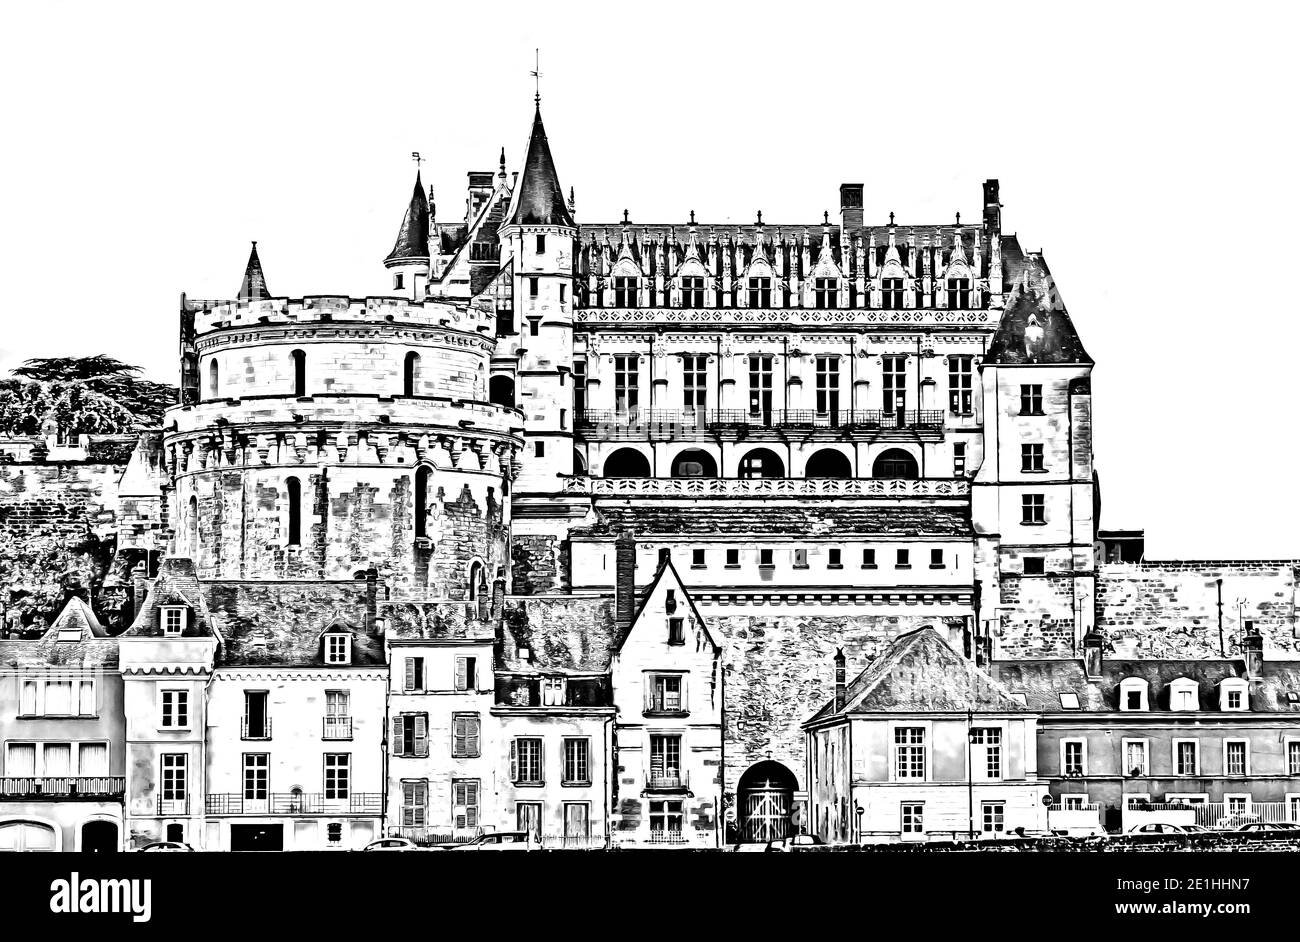 Château d'Amboise dans la vallée de la Loire, région de Touraine, France - série d'illustrations de style peint vintage, style dessin au crayon. Banque D'Images